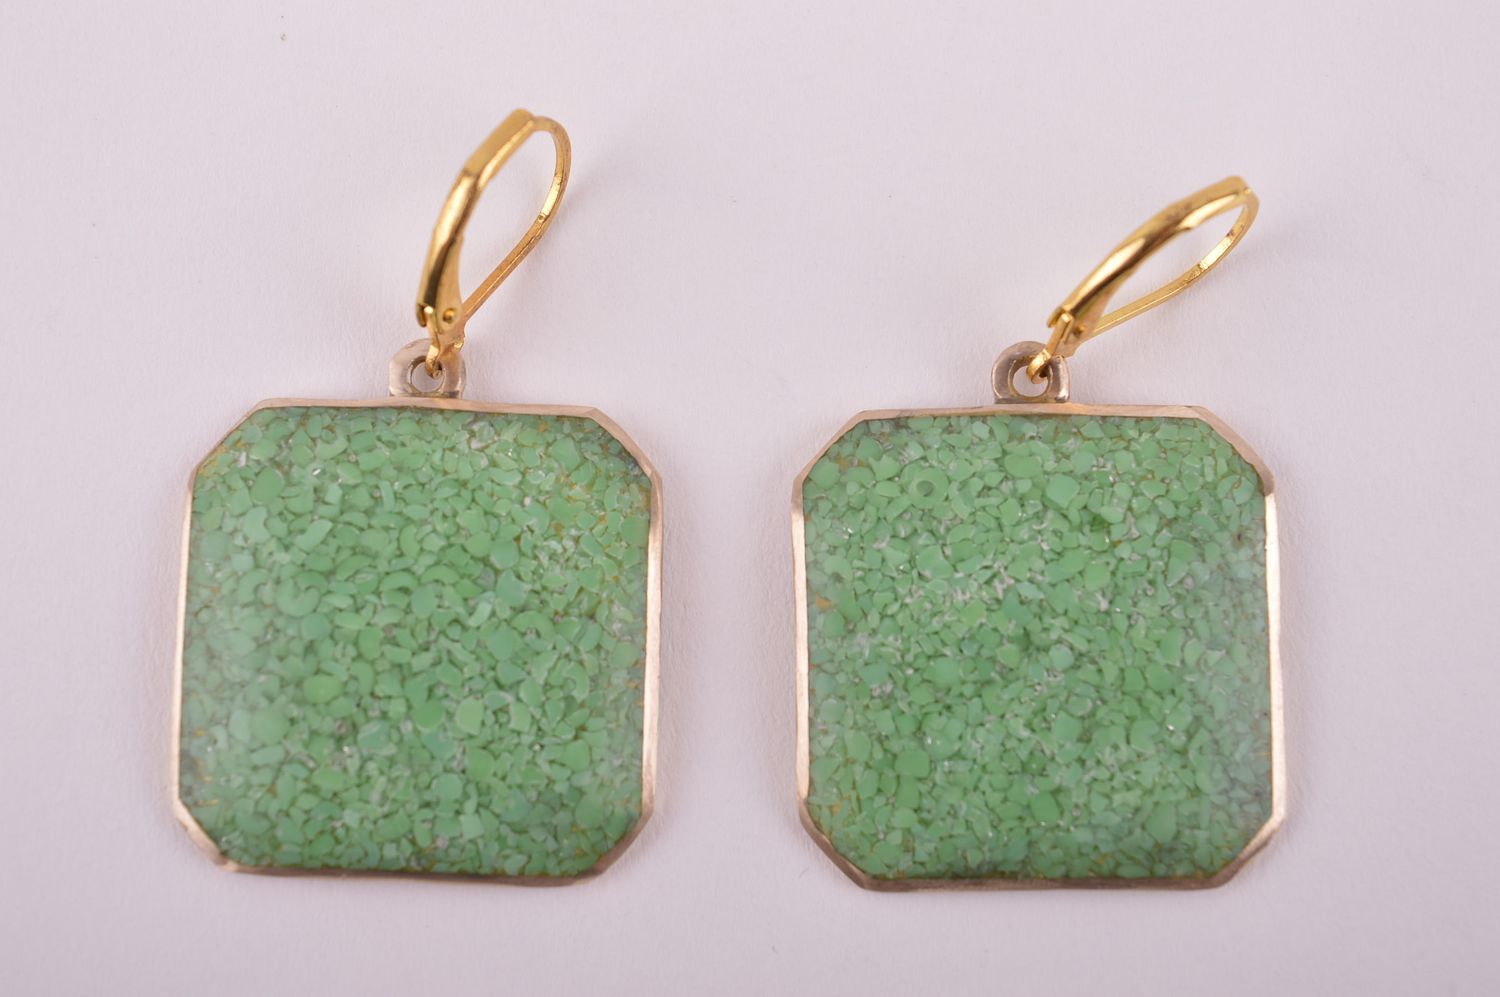 Украшение из латуни handmade серьги из натуральных камней модные серьги зеленые фото 3